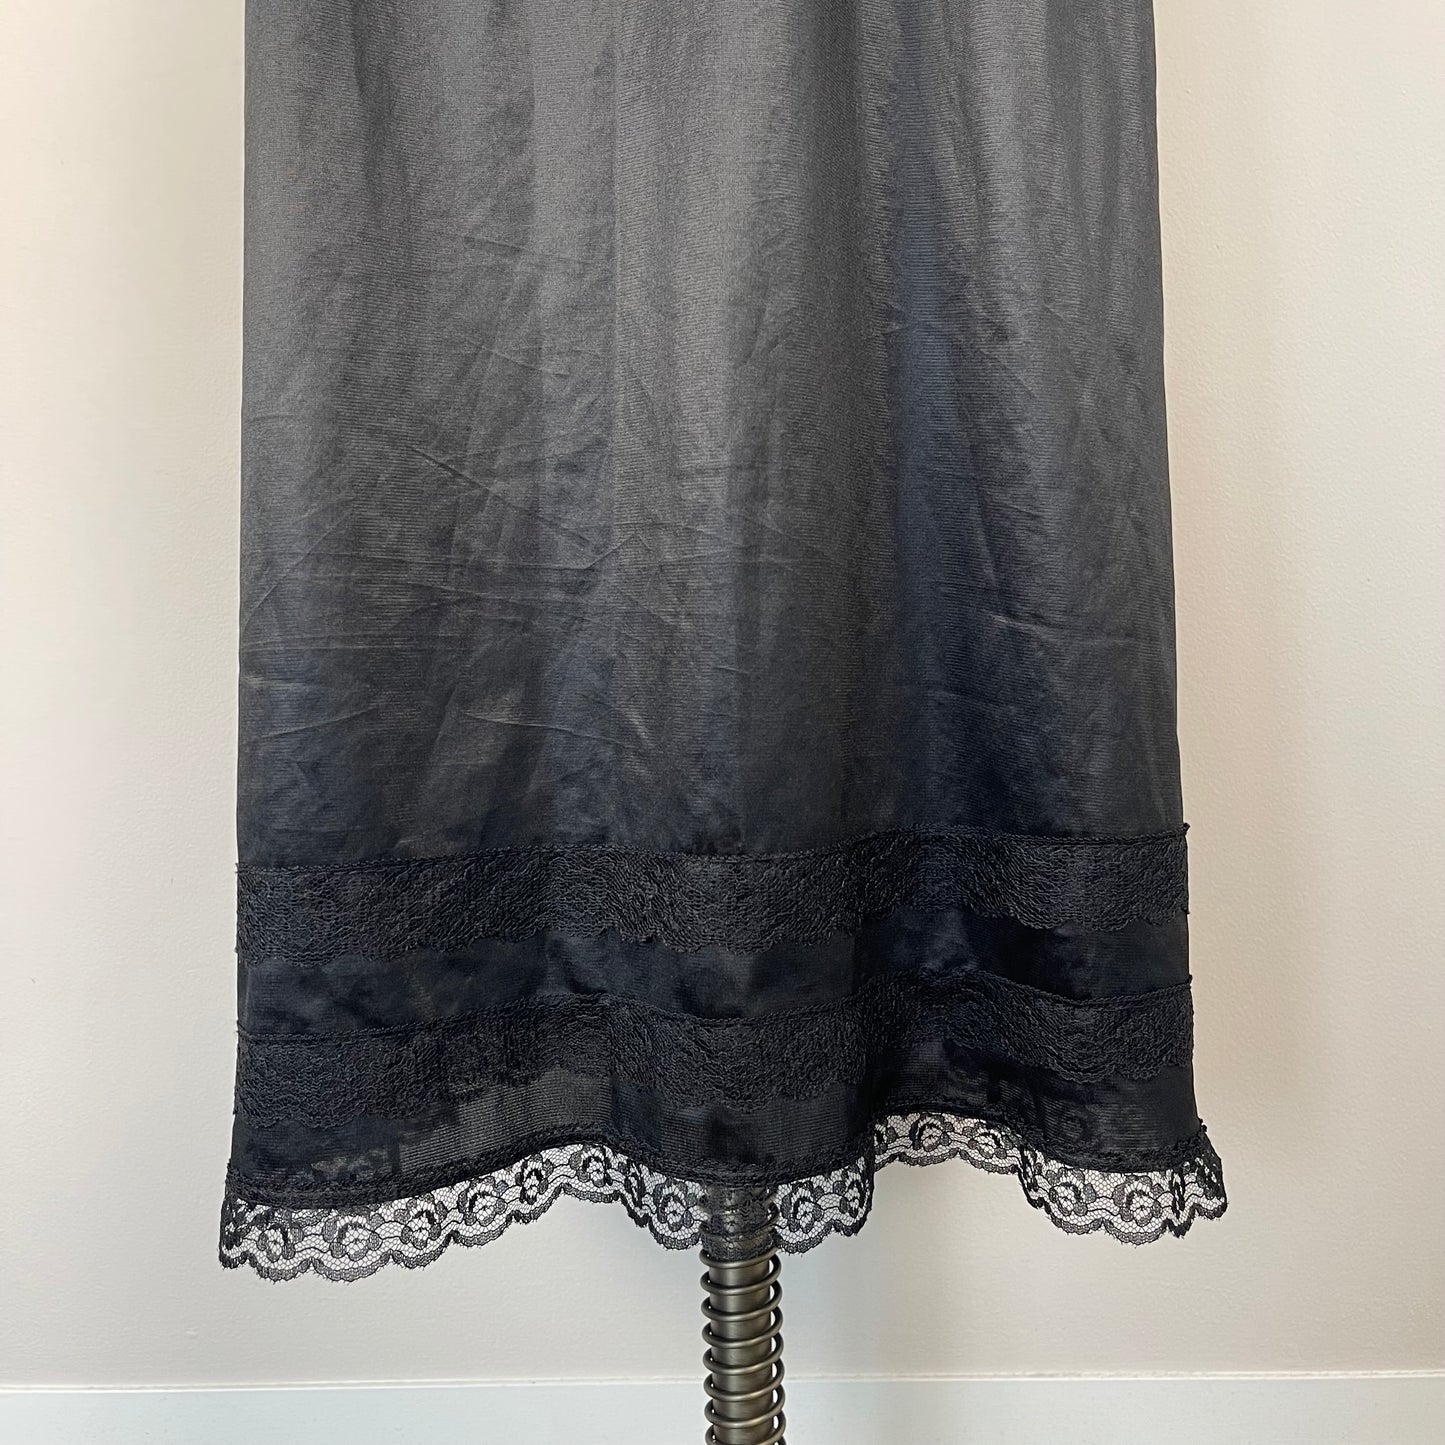 Vintage Black Satin Slip Skirt